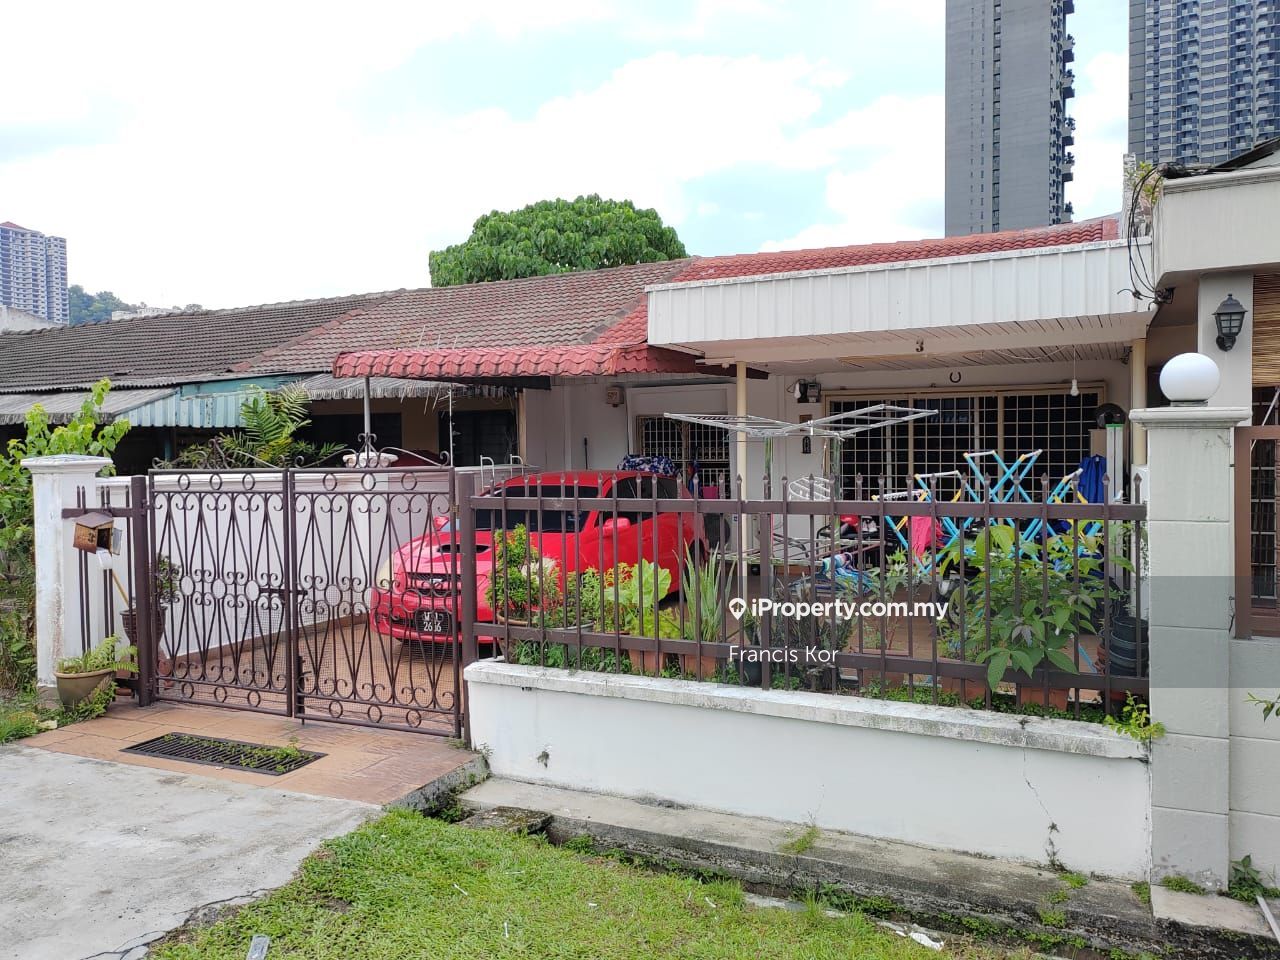 House 3, Jalan Templer petaling jaya for rent